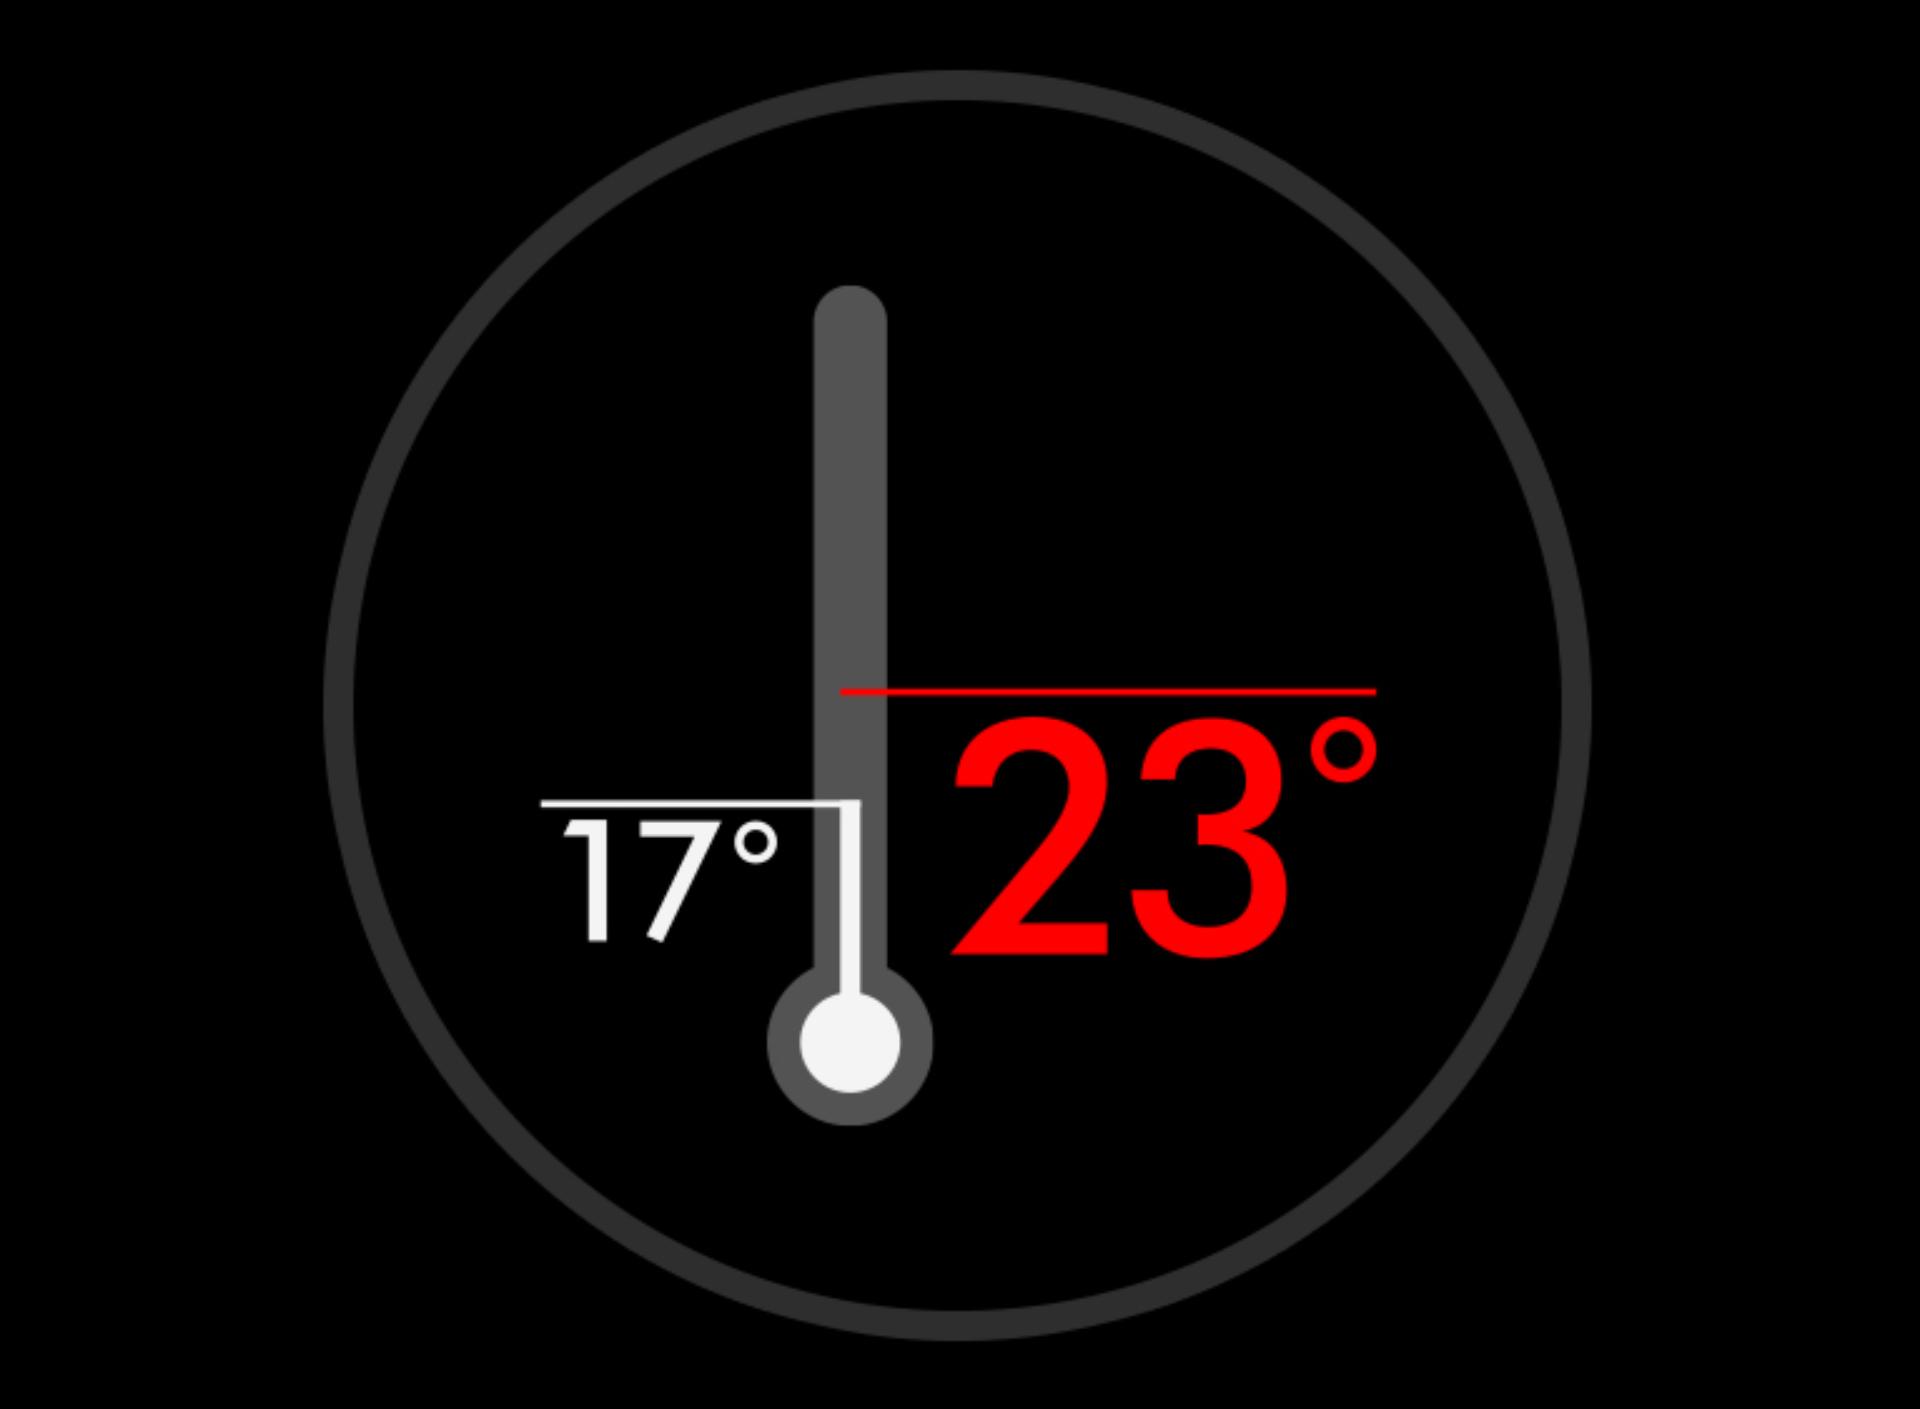 Temperatūros indikatorius LCD ekrane